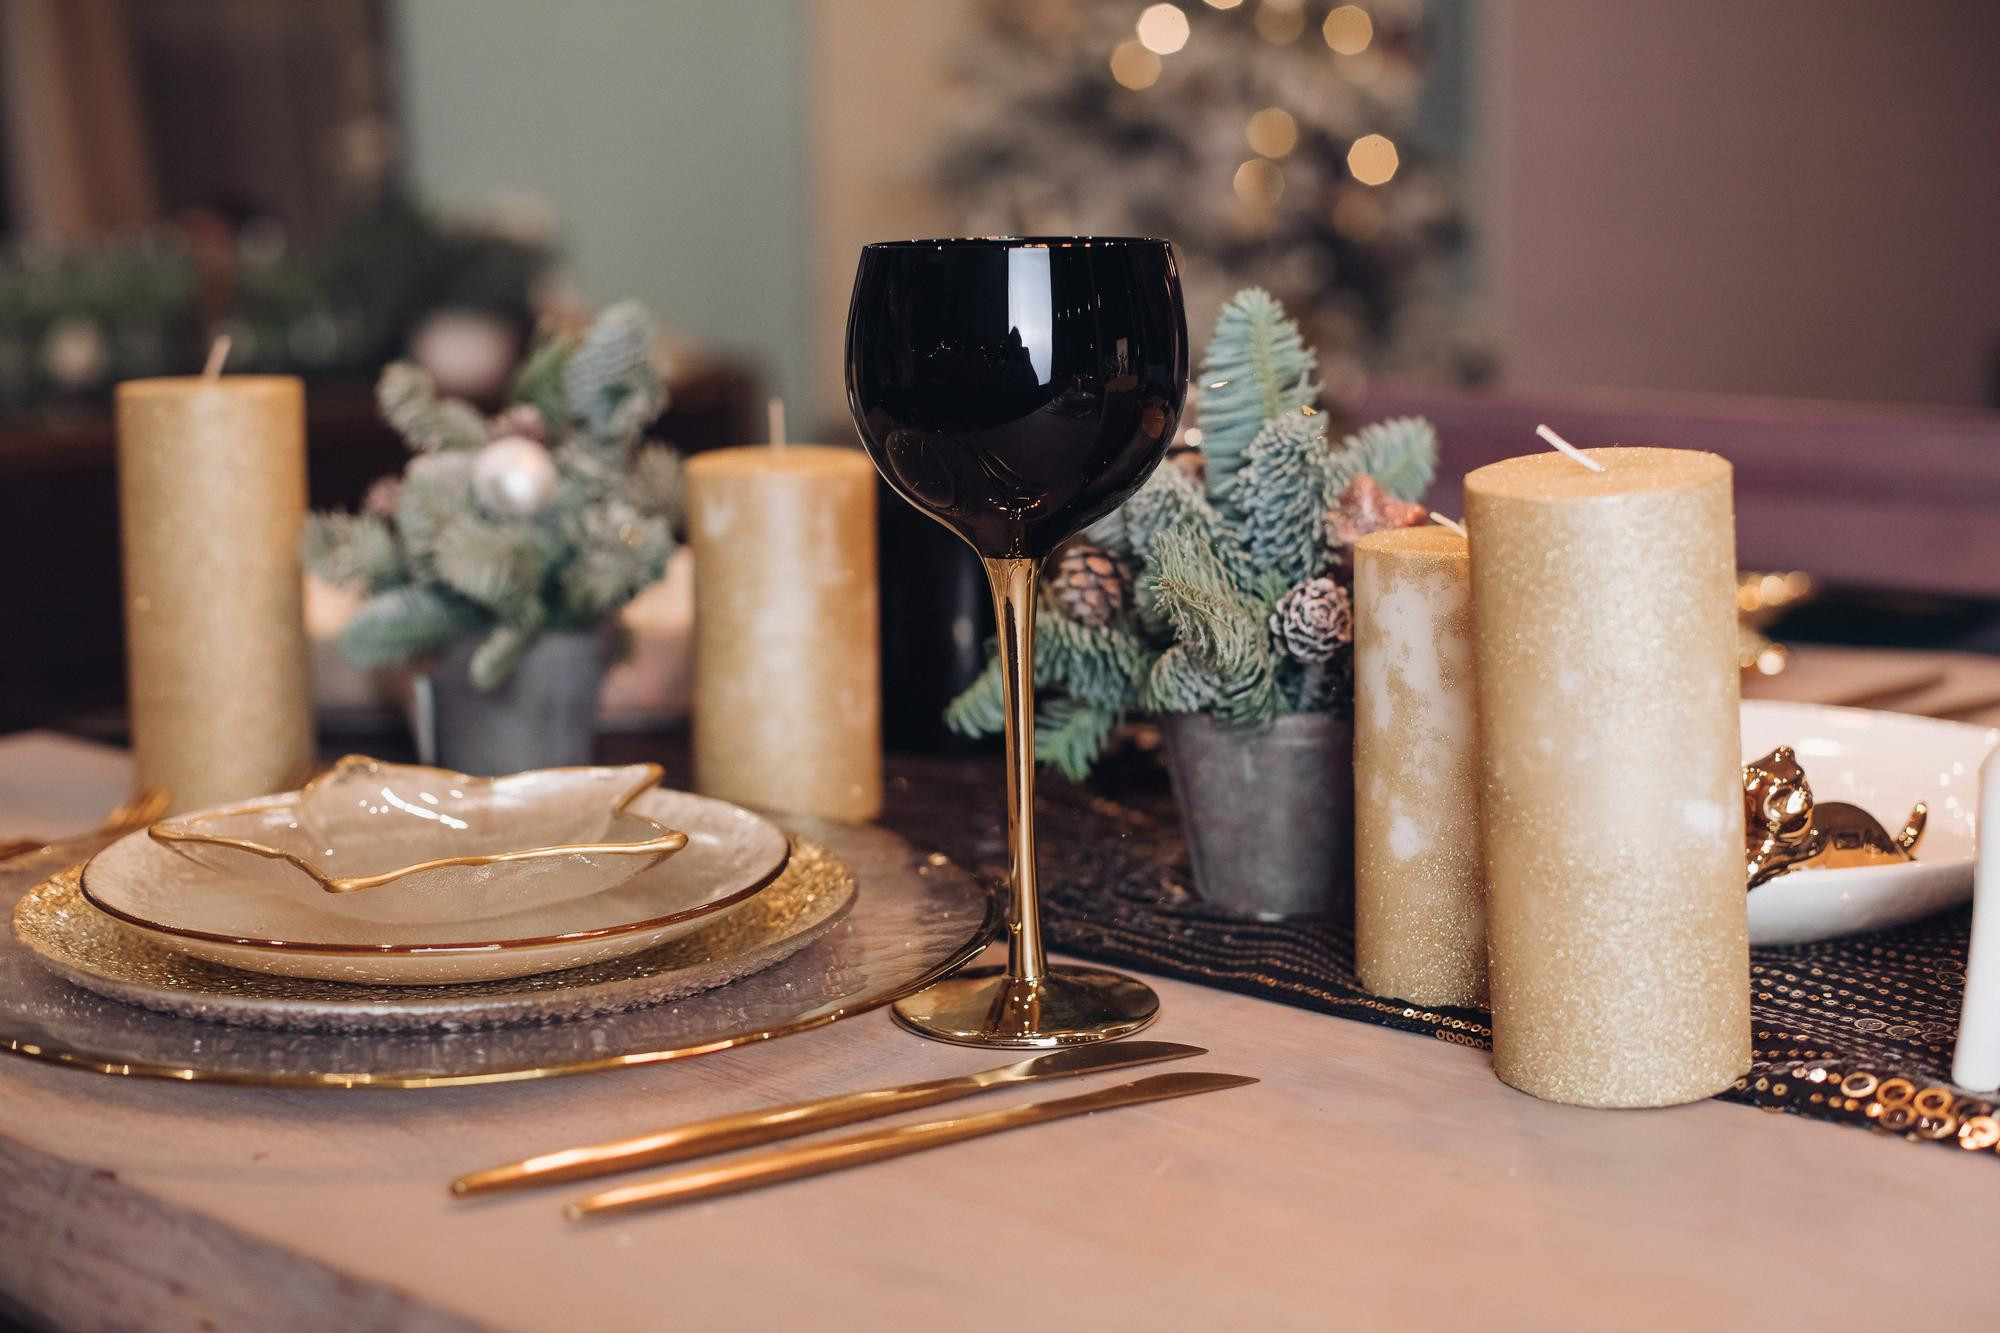 Servilletas elegantes y bonitas perfectas para la mesa de Navidad